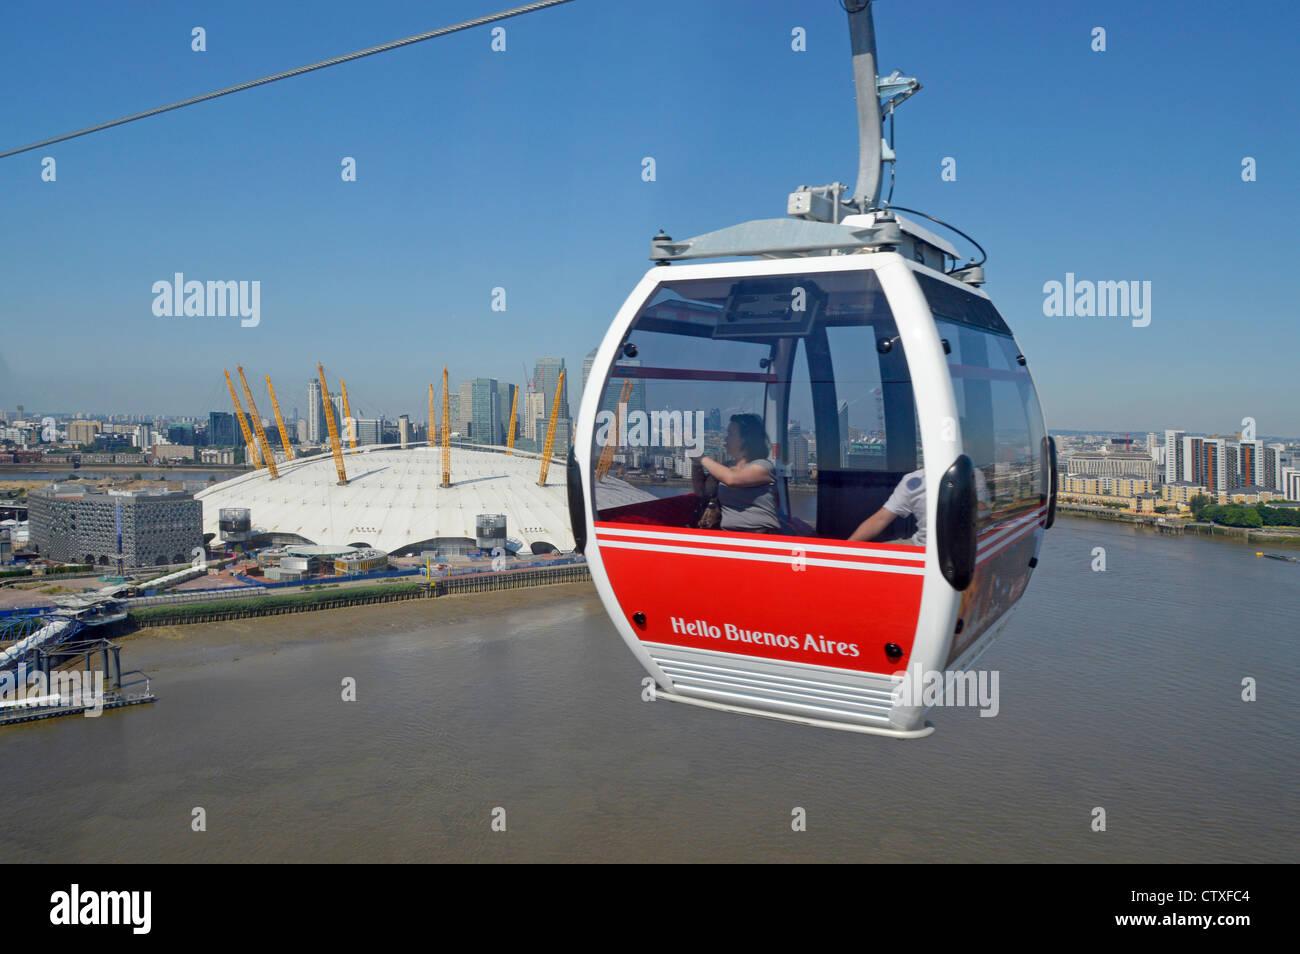 Emirates Air Line parrainé avec téléphérique gondola Bonjour Buenos Aires la publicité sur panneau rouge crossing River Thames Banque D'Images